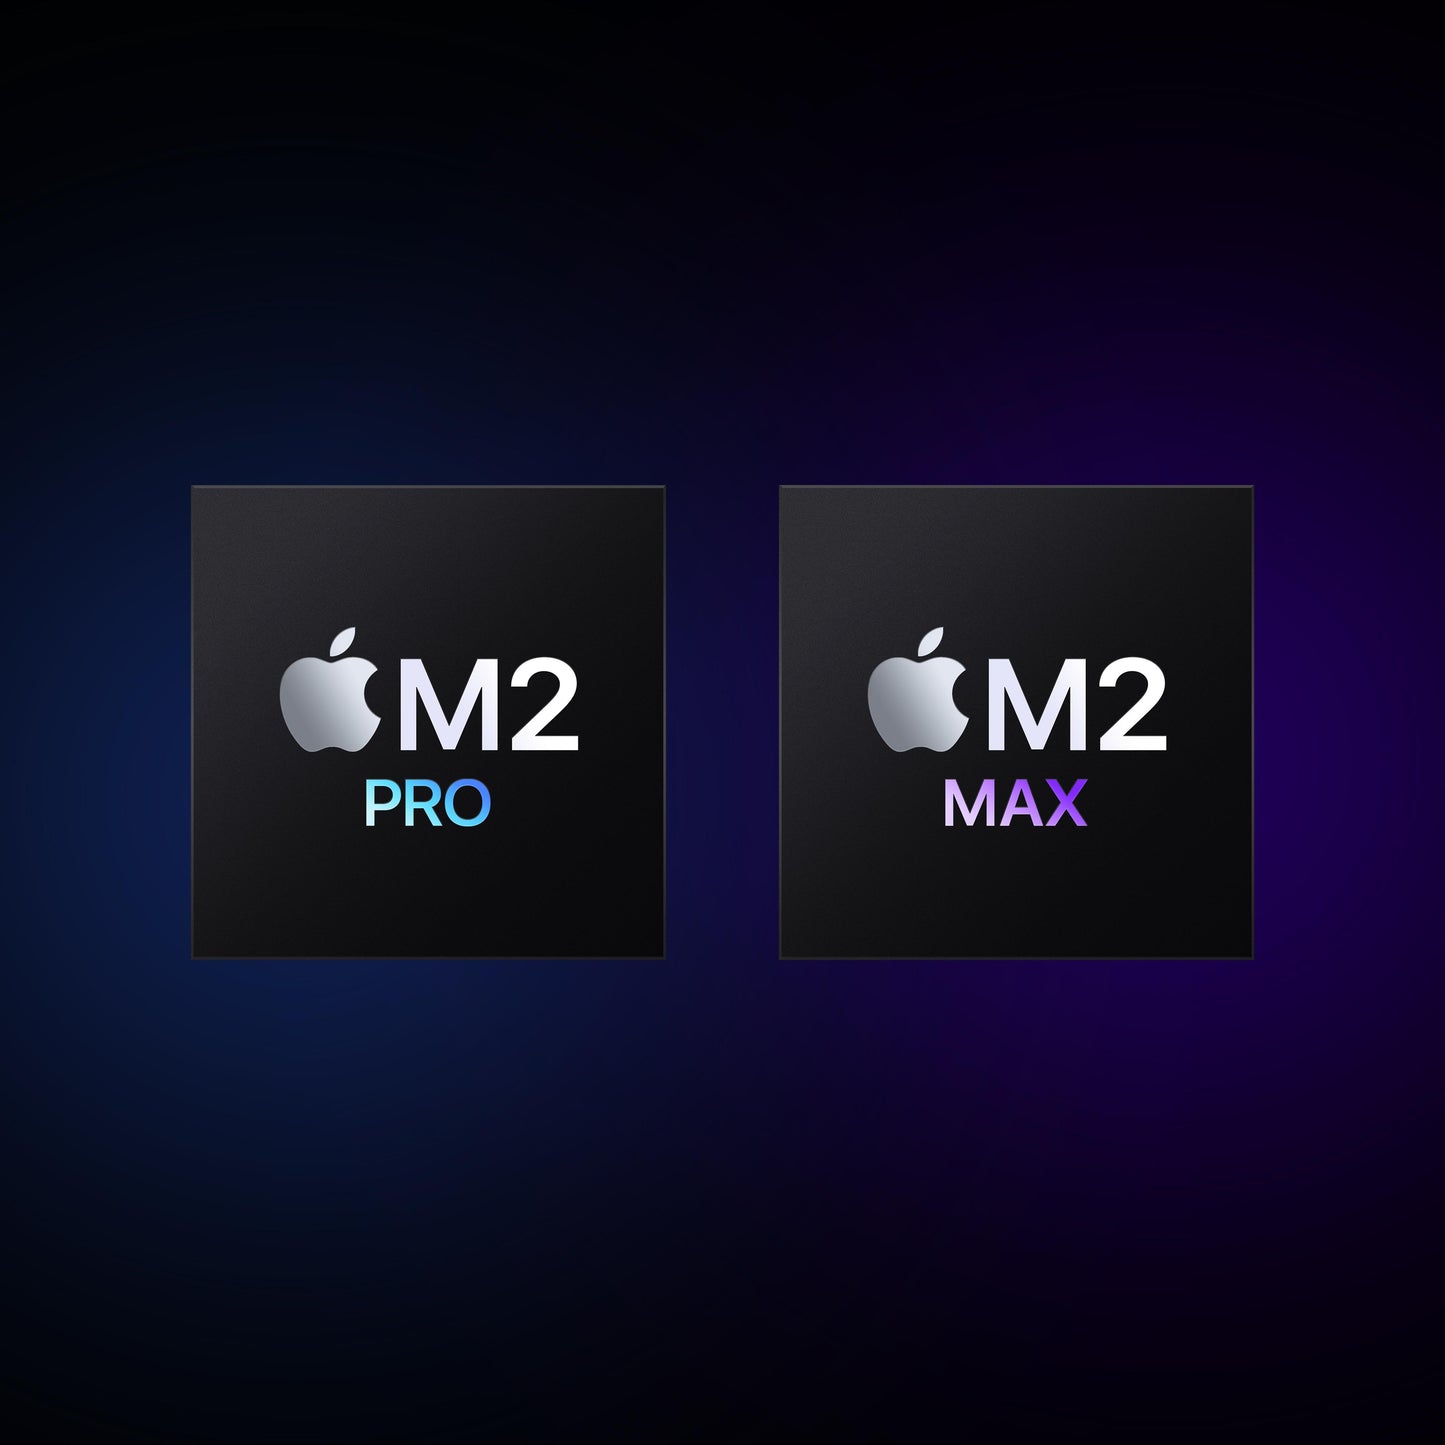 EOL MacBook Pro 16 pouces: Puce Apple M2 Pro avec CPU 12 cœurs et GPU 19 cœurs,  512 Go - Gris sidéral